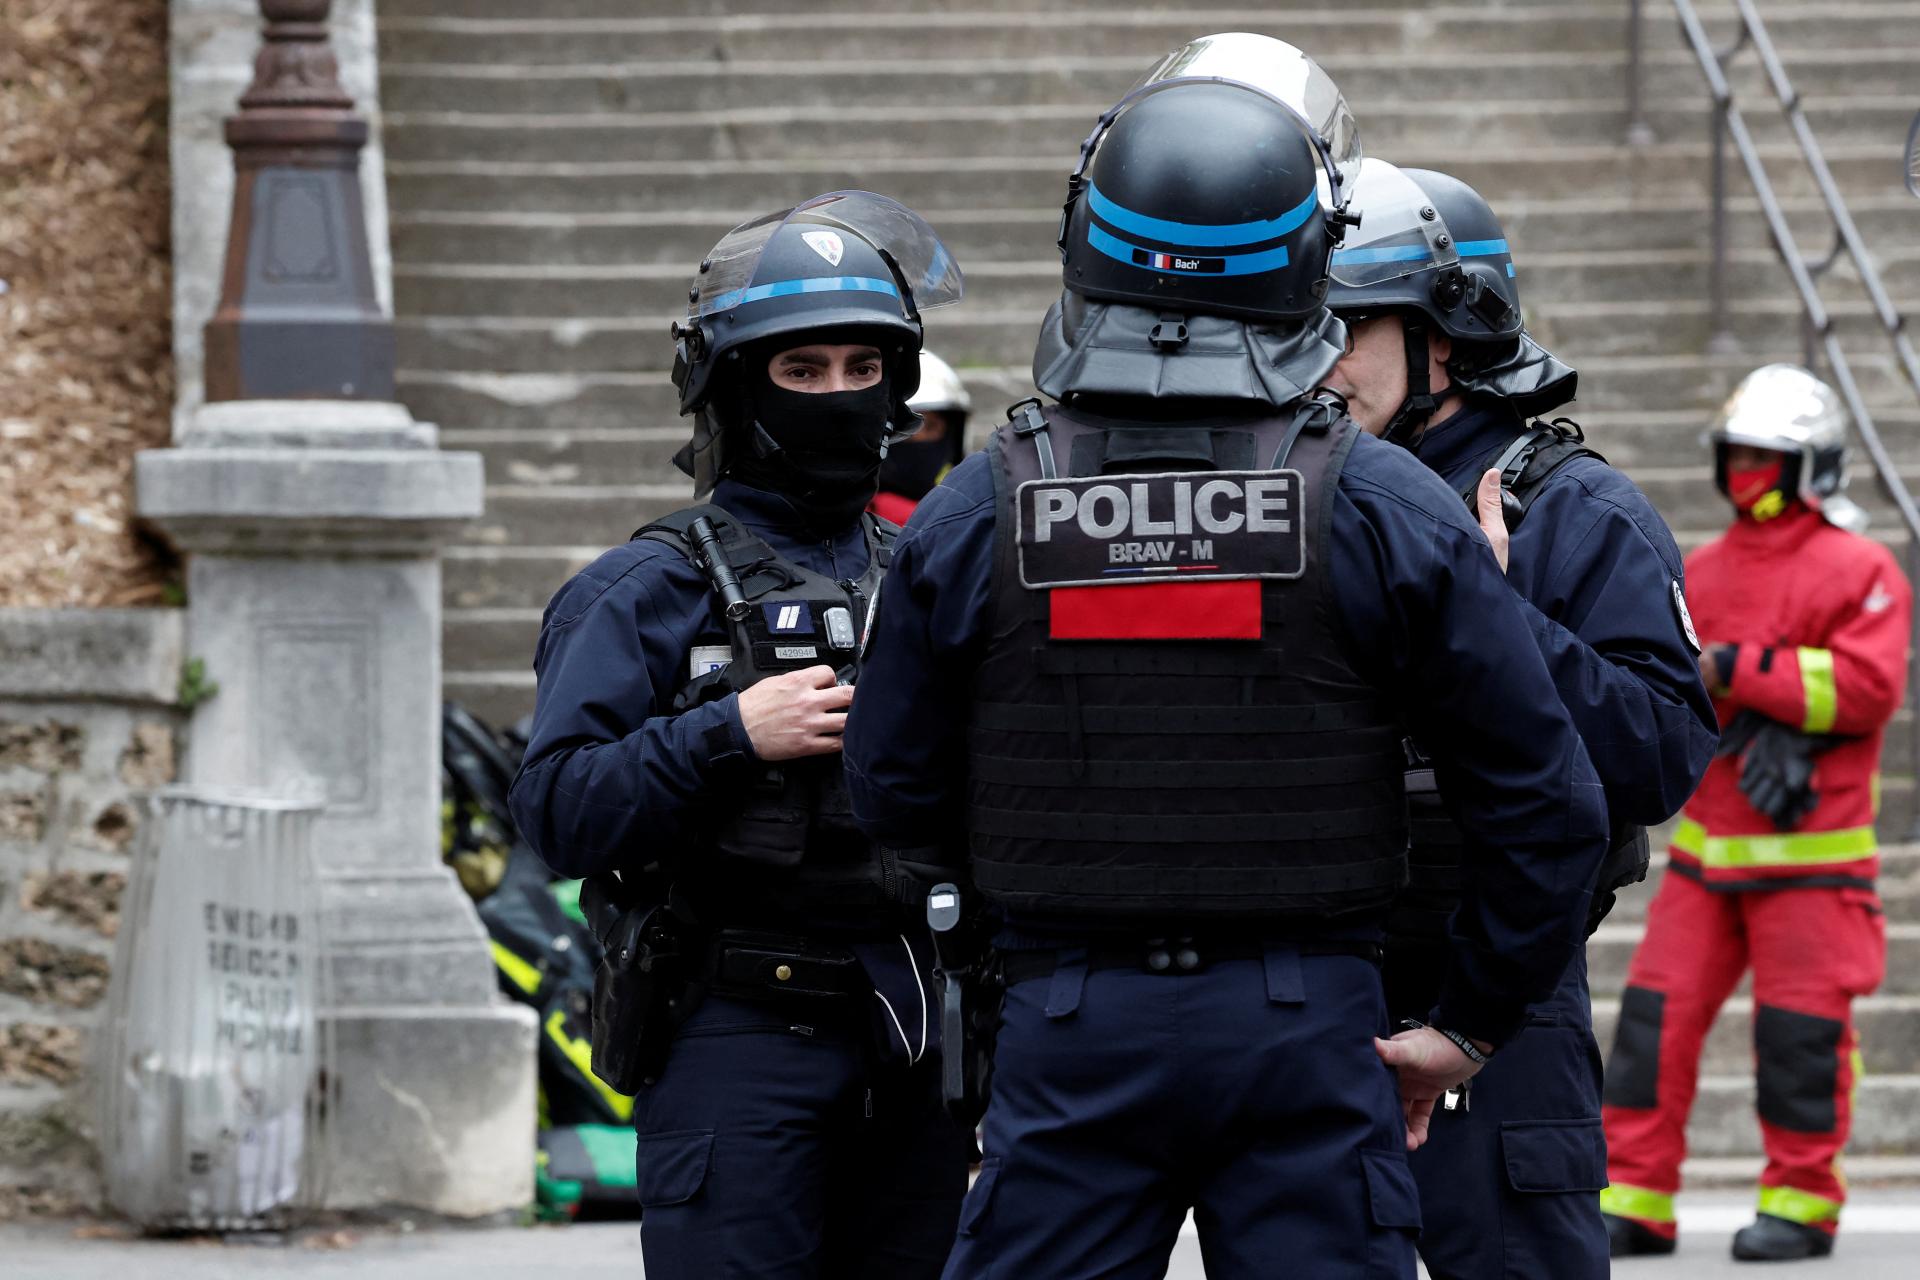 Útočníci vo Francúzsku prepadli dodávku, zastrelili dozorcov a oslobodili väzňa. Zasahujú stovky policajtov